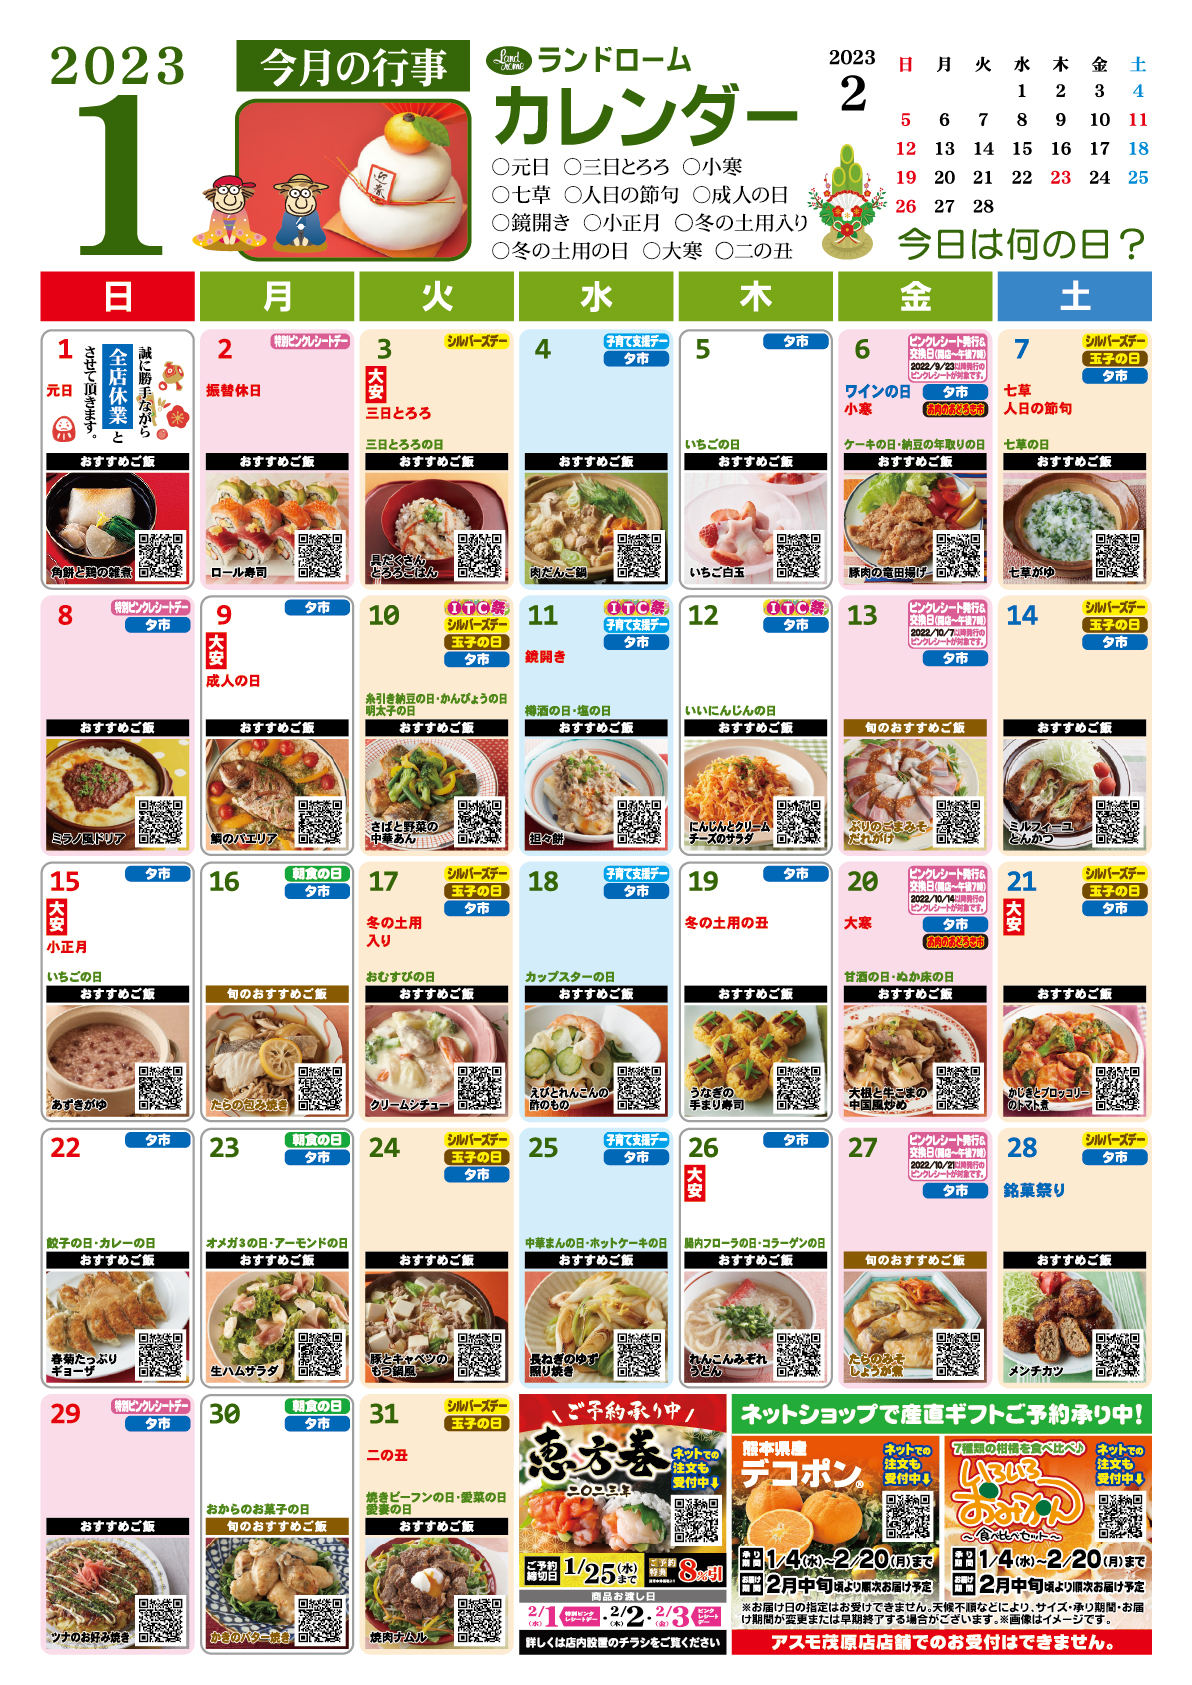 1月アスモ茂原店用ランドロームカレンダー